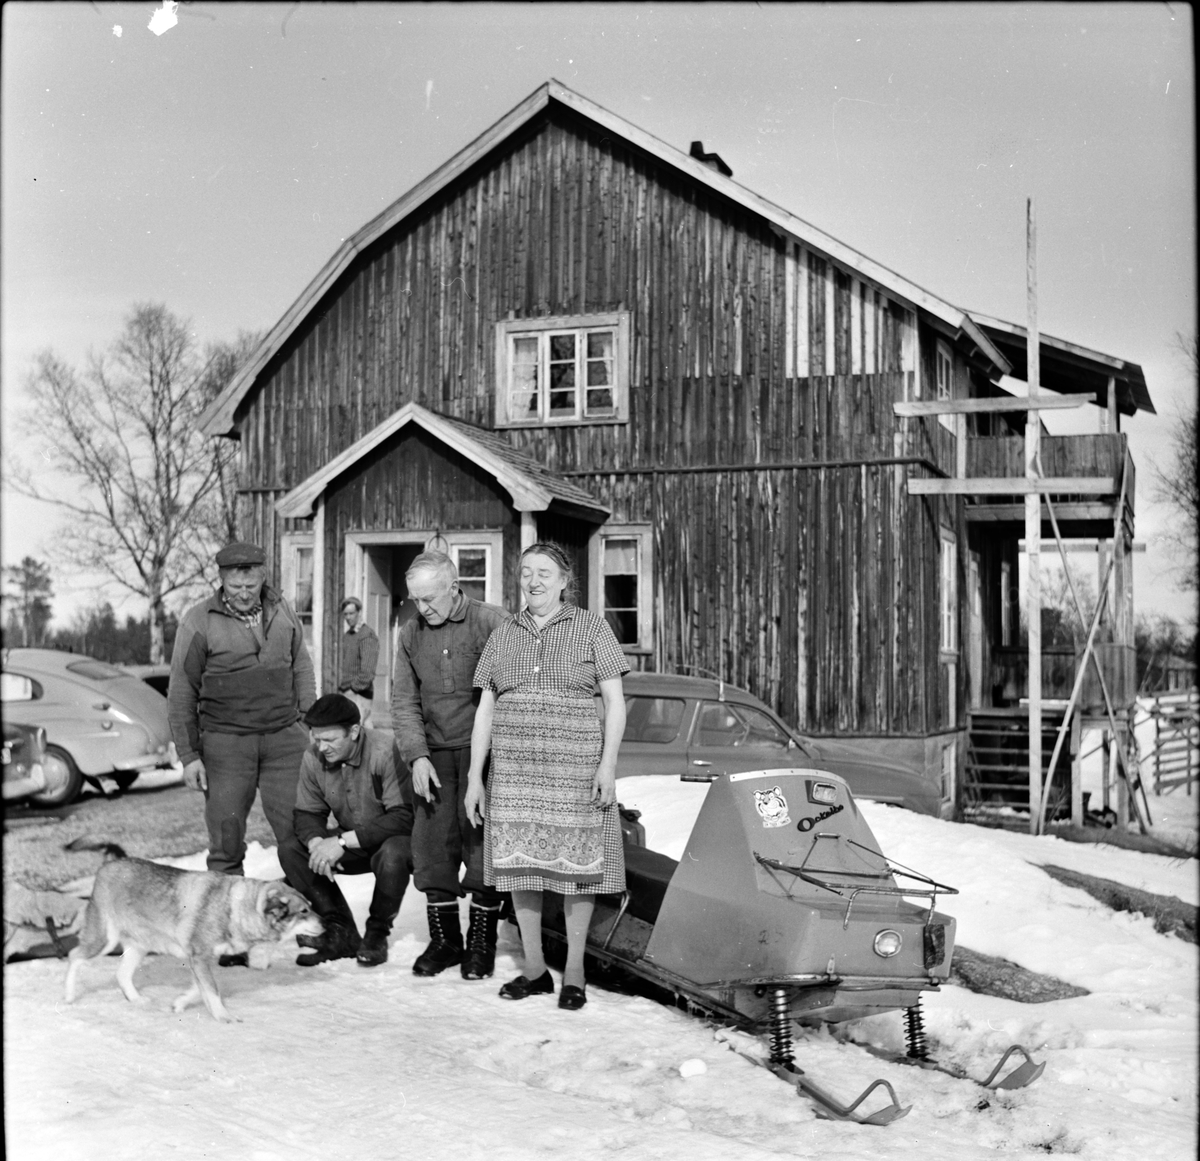 Käringsjövallen.
Familjen Anna, Per, John och Ludvig Källgren.
April-1967